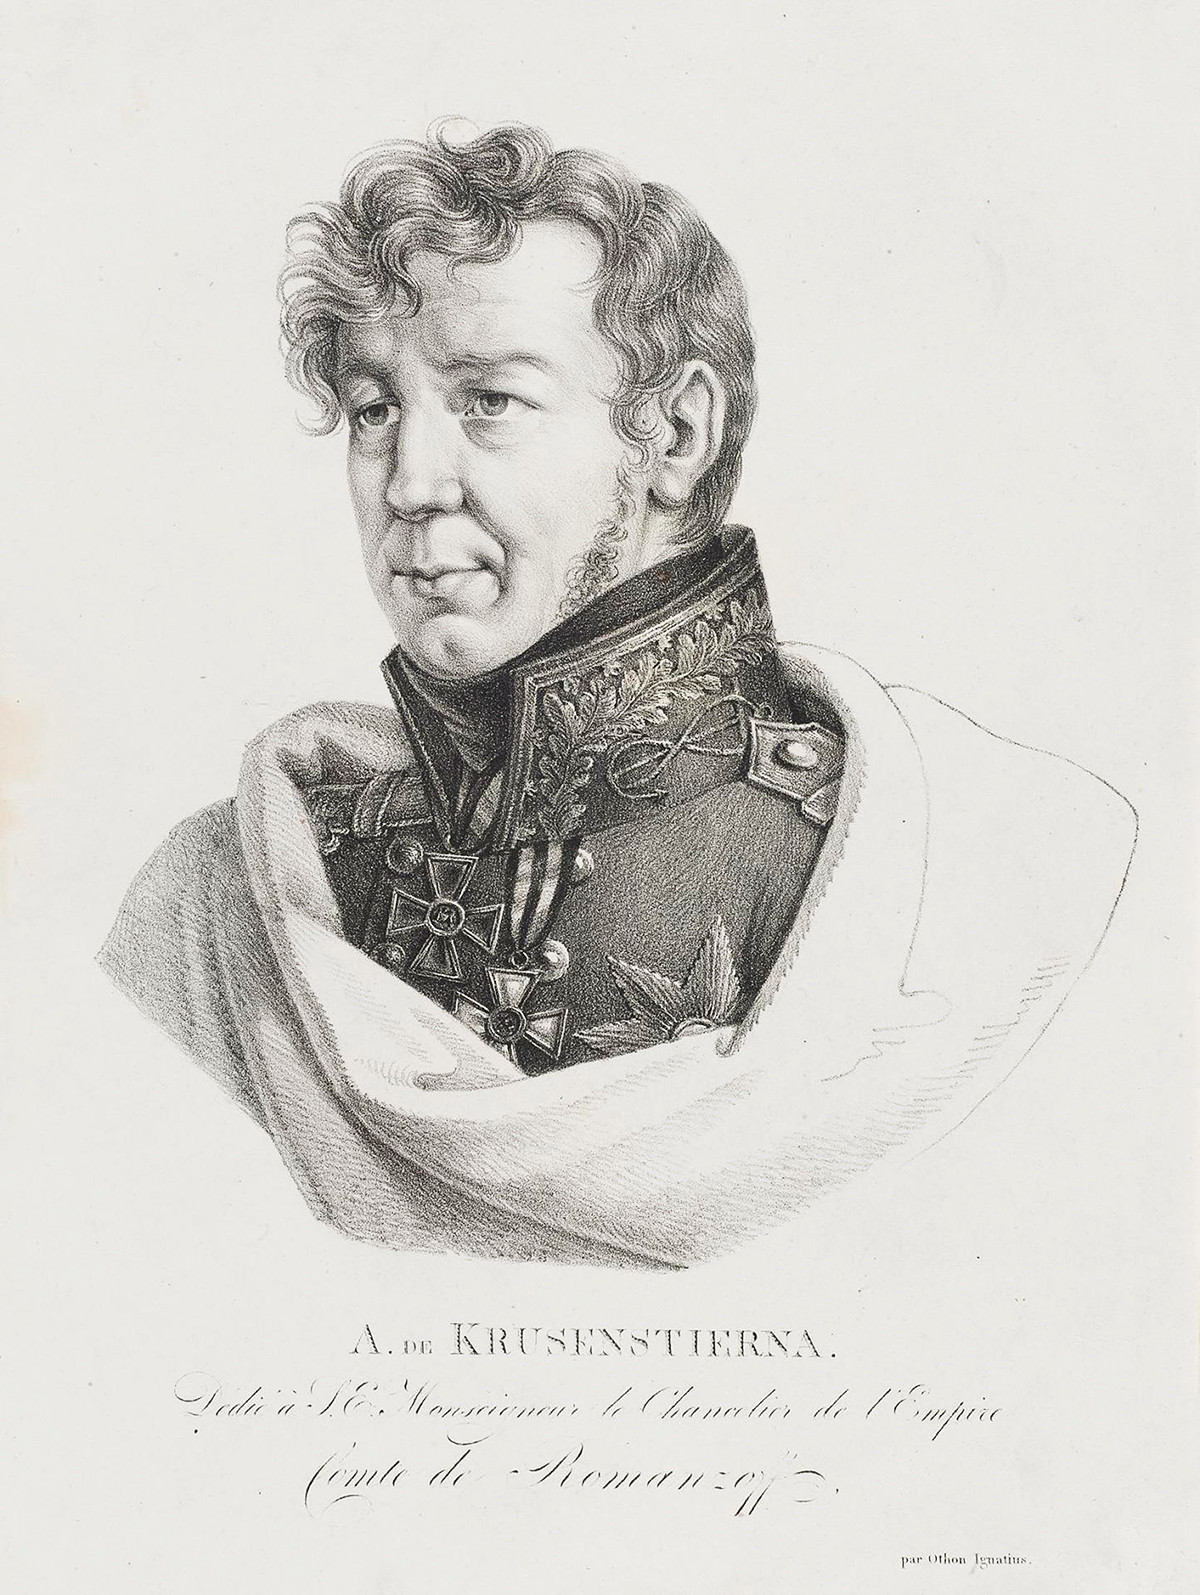 Ferdinand von Wrangel (1770-1846)
